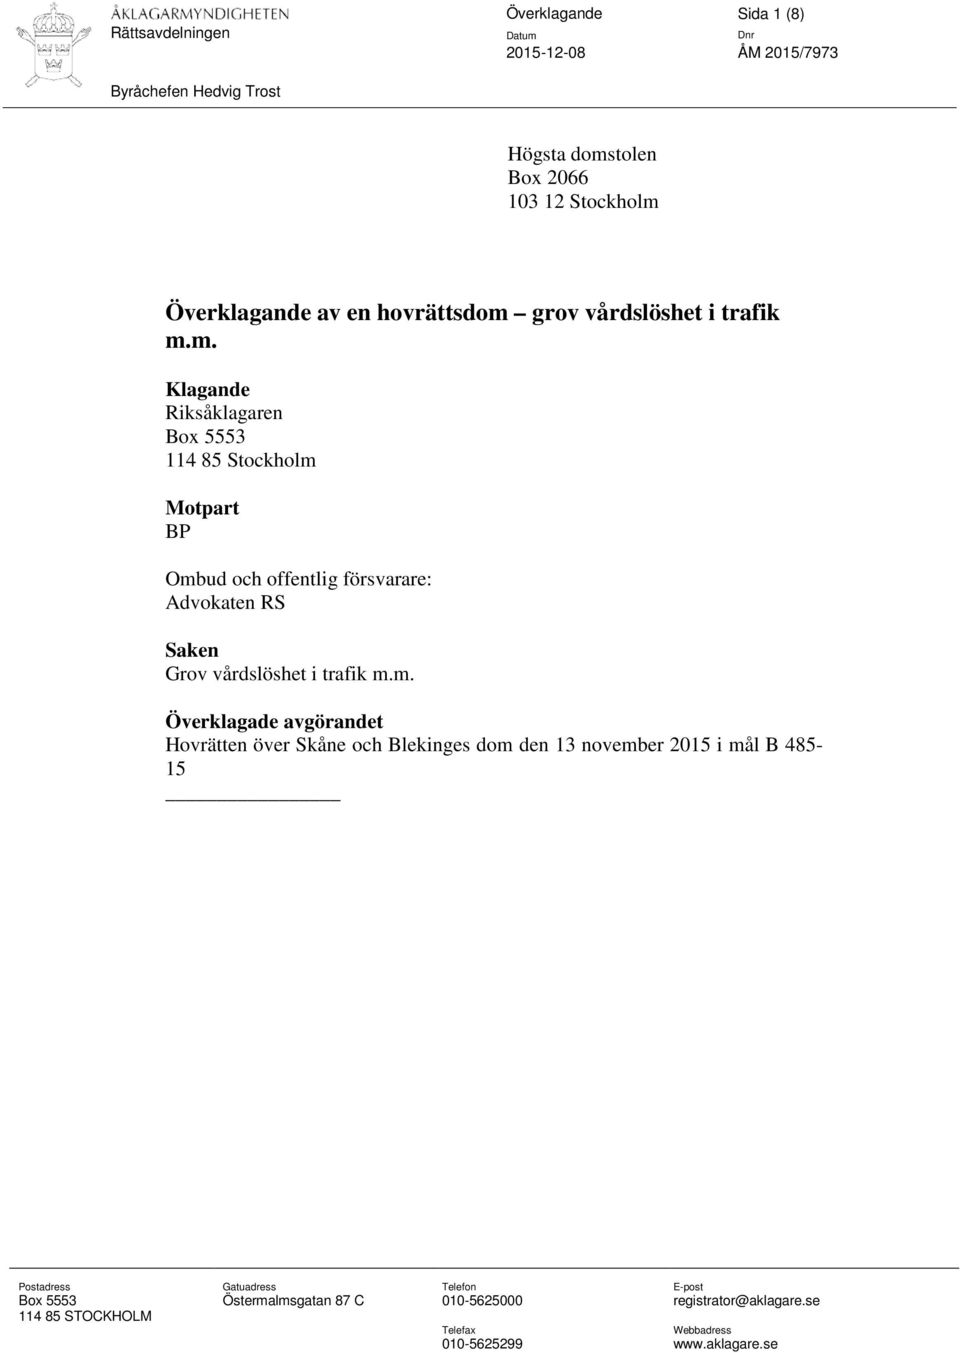 m. Klagande Riksåklagaren Box 5553 114 85 Stockholm Motpart BP Ombud och offentlig försvarare: Advokaten RS Saken Grov m.